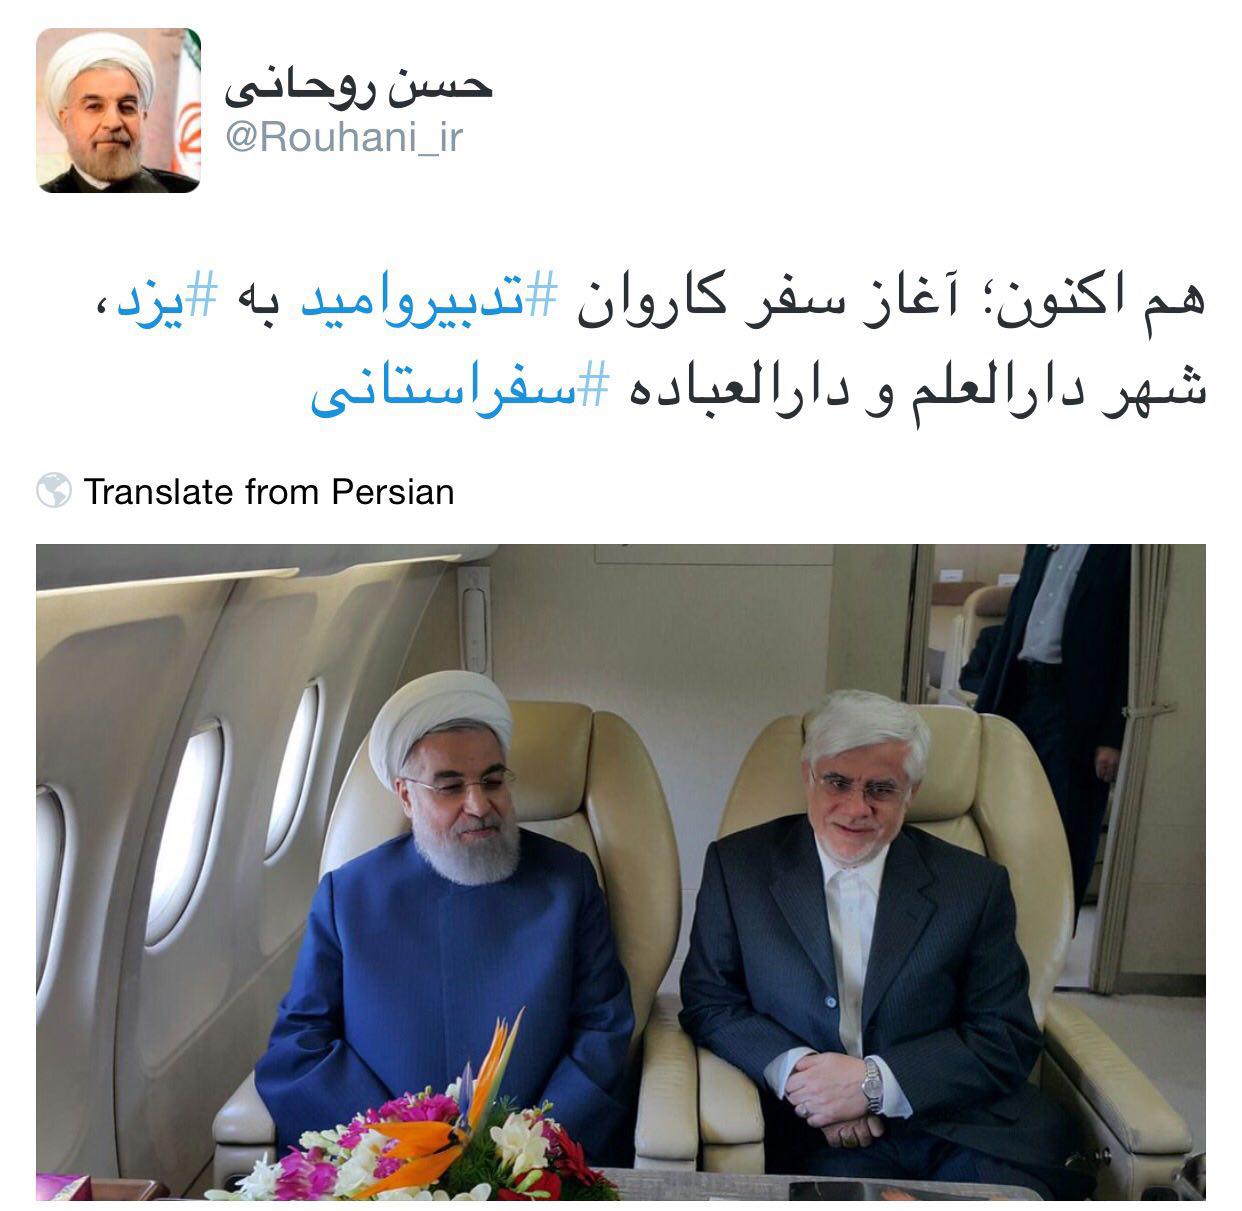 روحانی به همراه عارف راهی یزد شد (تصویر)